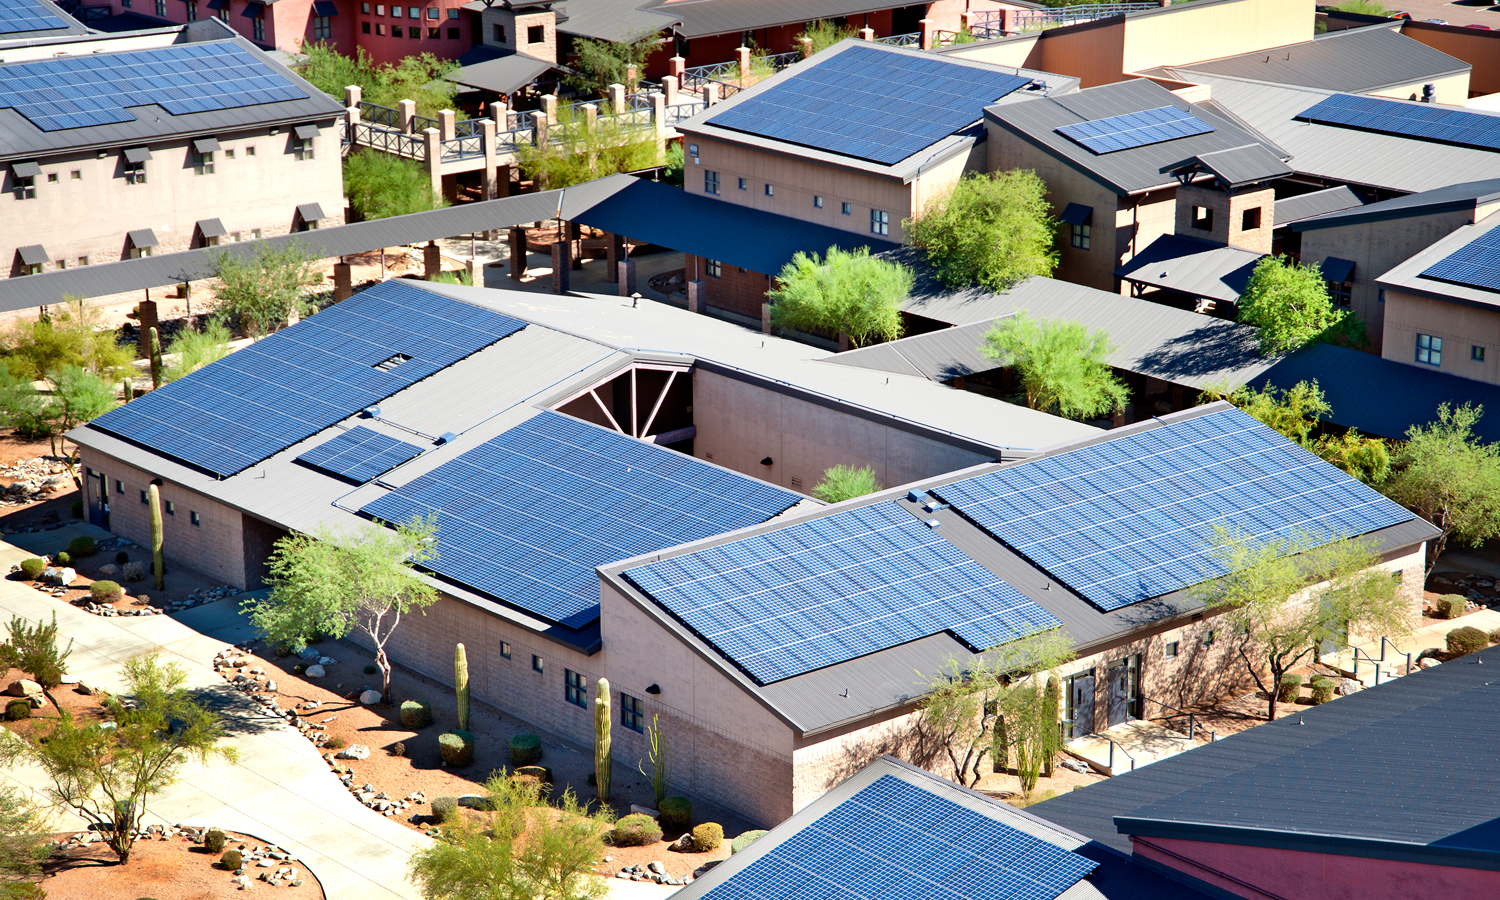 Las soluciones de autoconsumo de SolarCity llegan a escuelas como la de la imagen.